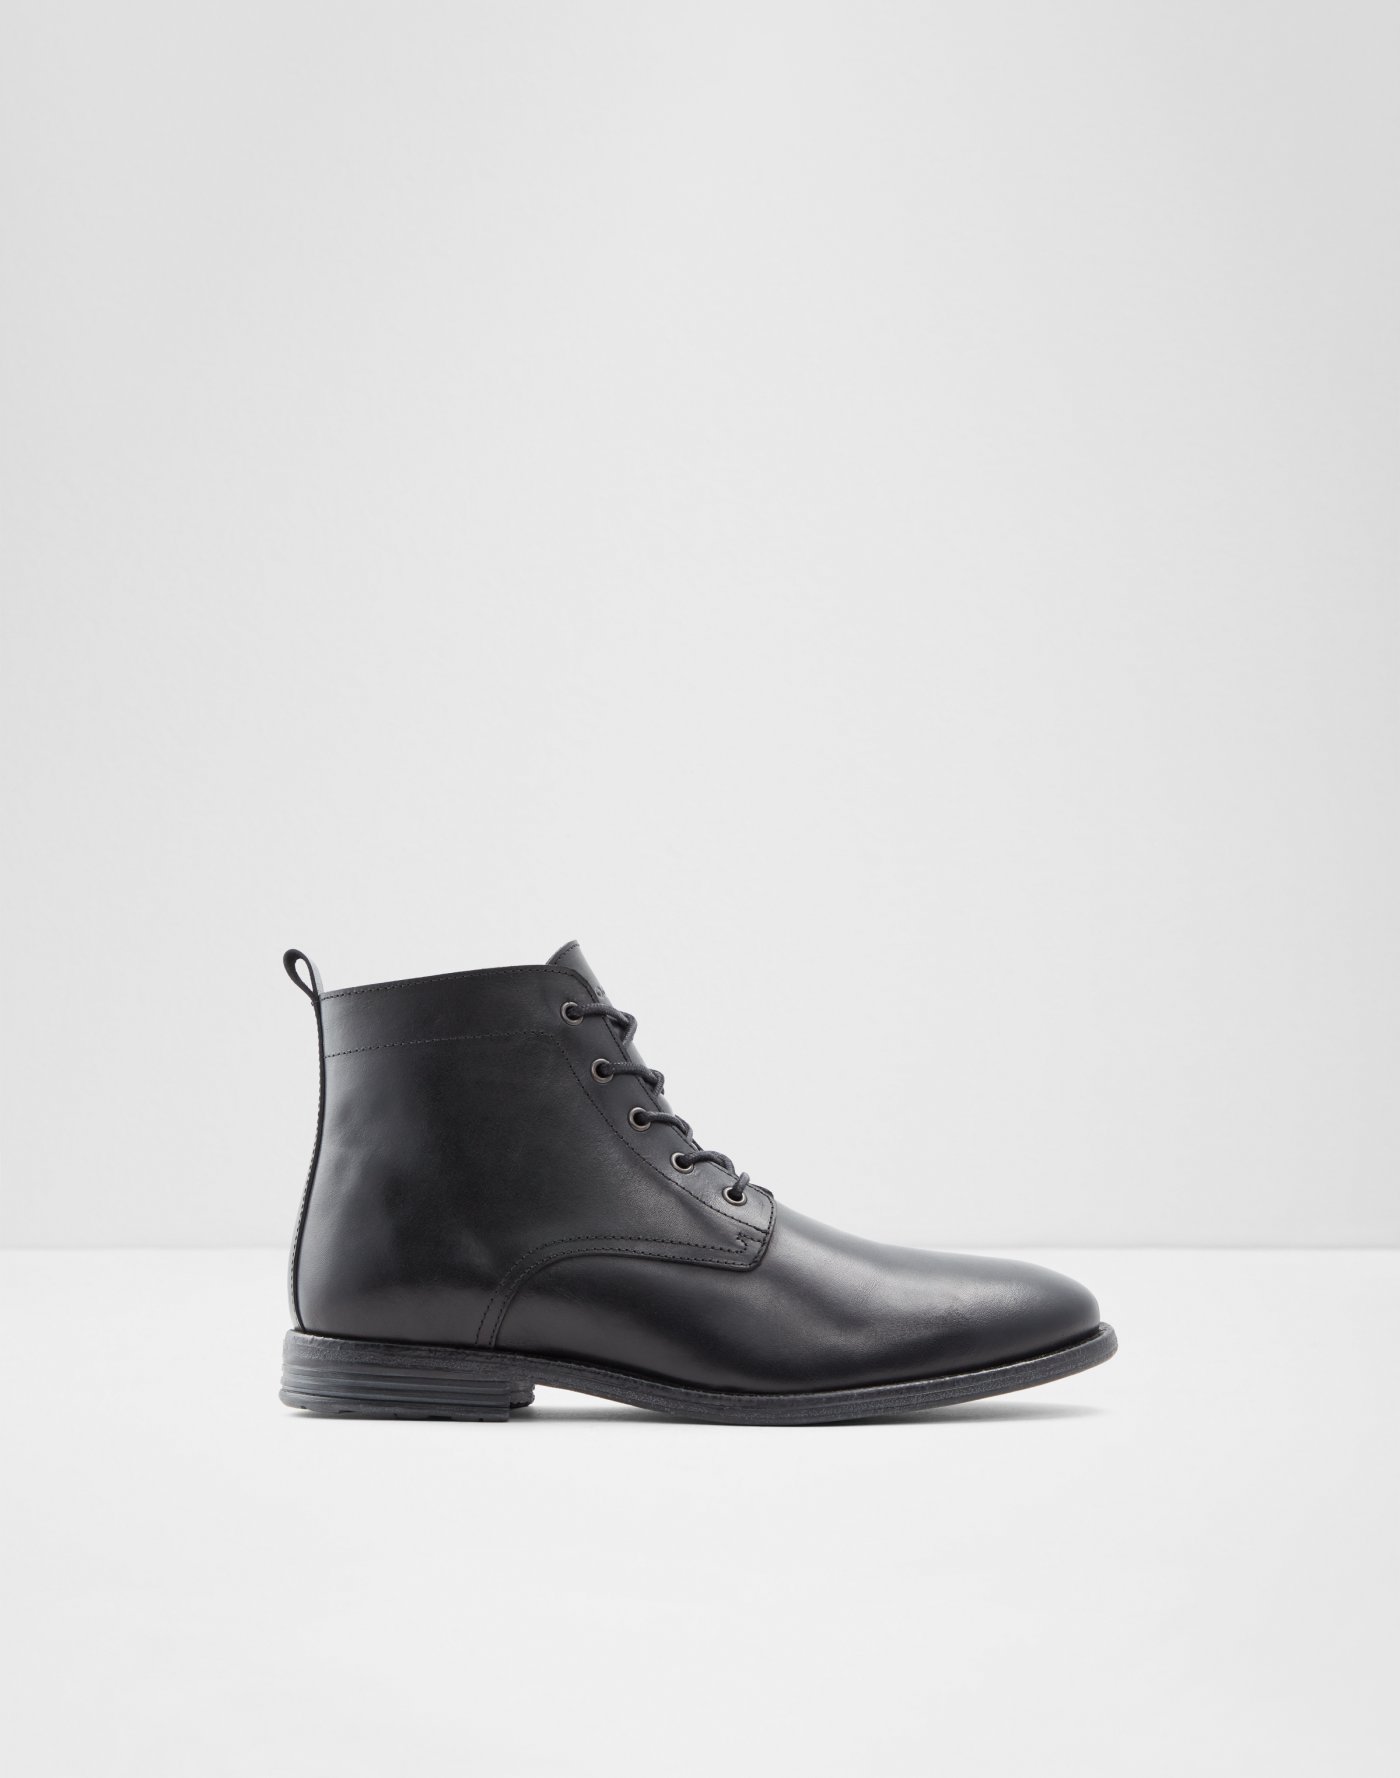 Sale | Men's Footwear on Sale | ALDO US